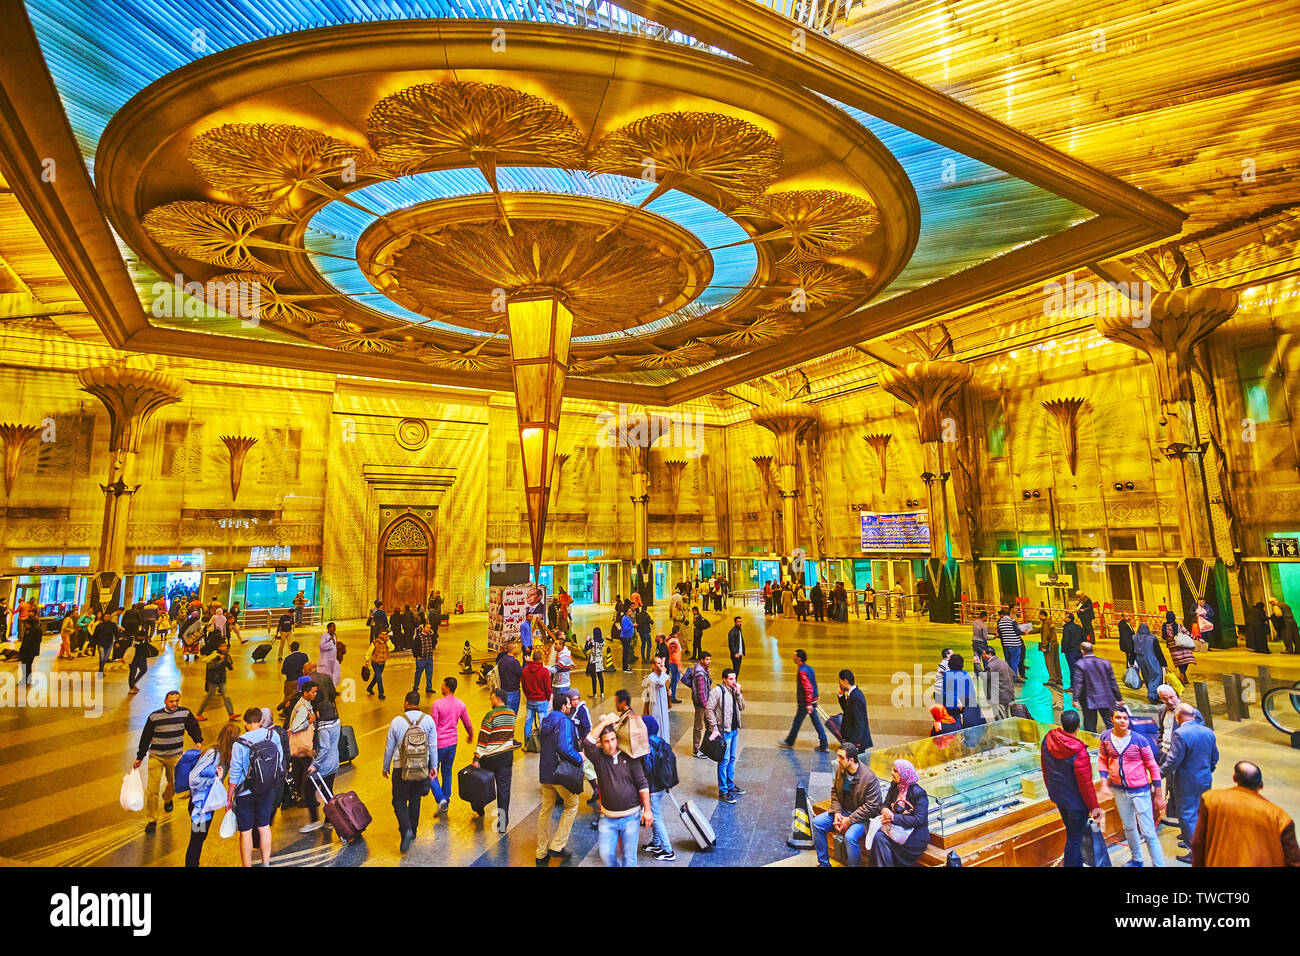 Kairo, Ägypten, 22. Dezember 2017: Die prunkvolle Innenausstattung von Ramses (Misr) Bahnhof mit ungewöhnlichen Decke Dekoration in Form von inveted Pyramide, su Stockfoto